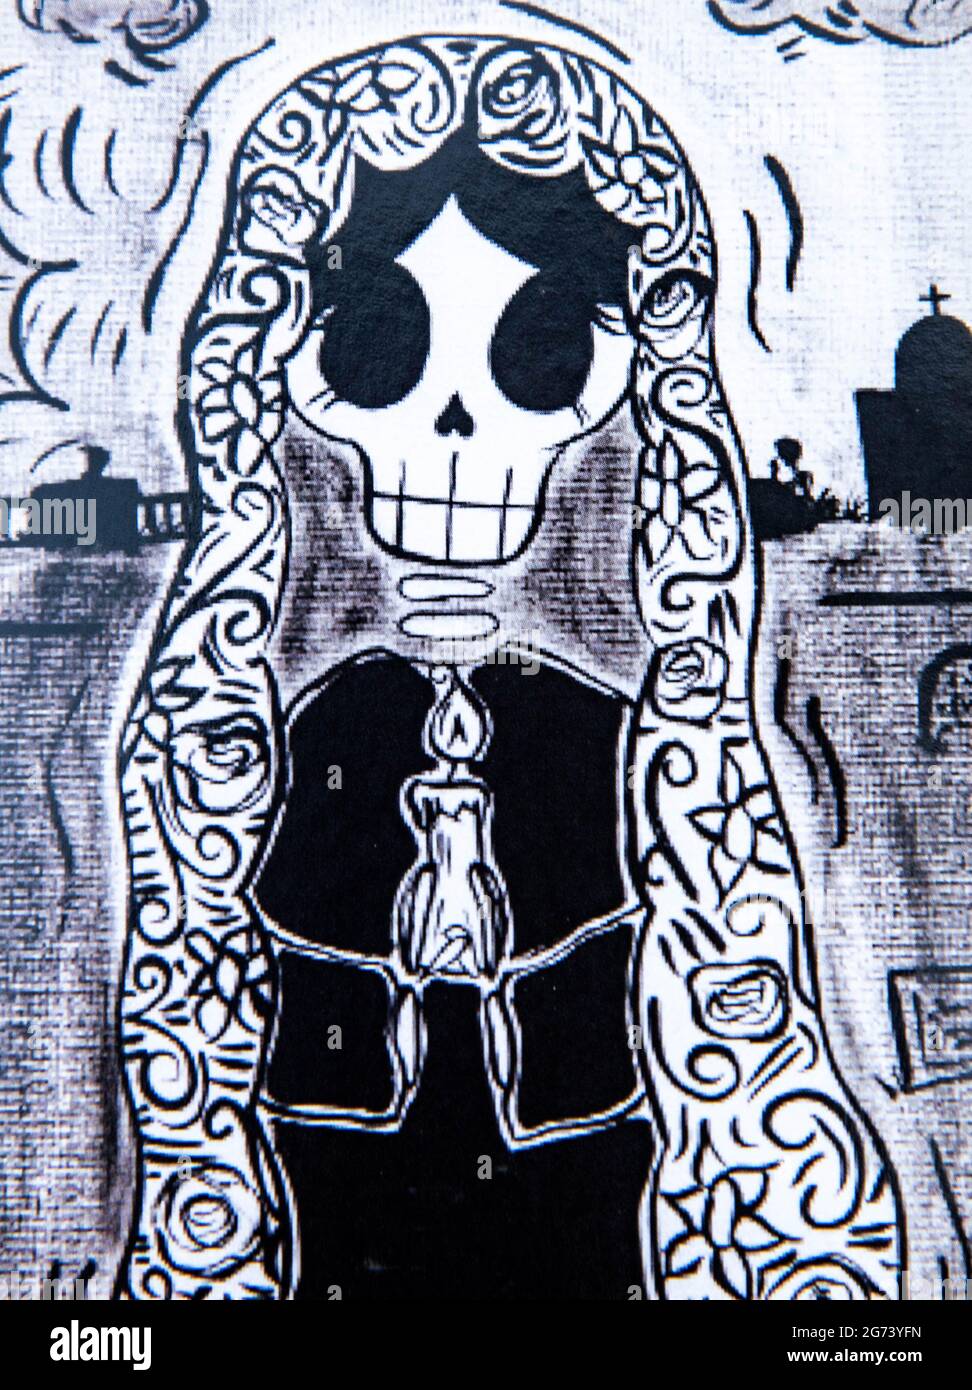 Immagine Day of the Dead; illustrazione fotografica; immagine in bianco e nero di uno scheletro di vedova in lutto. Foto Stock